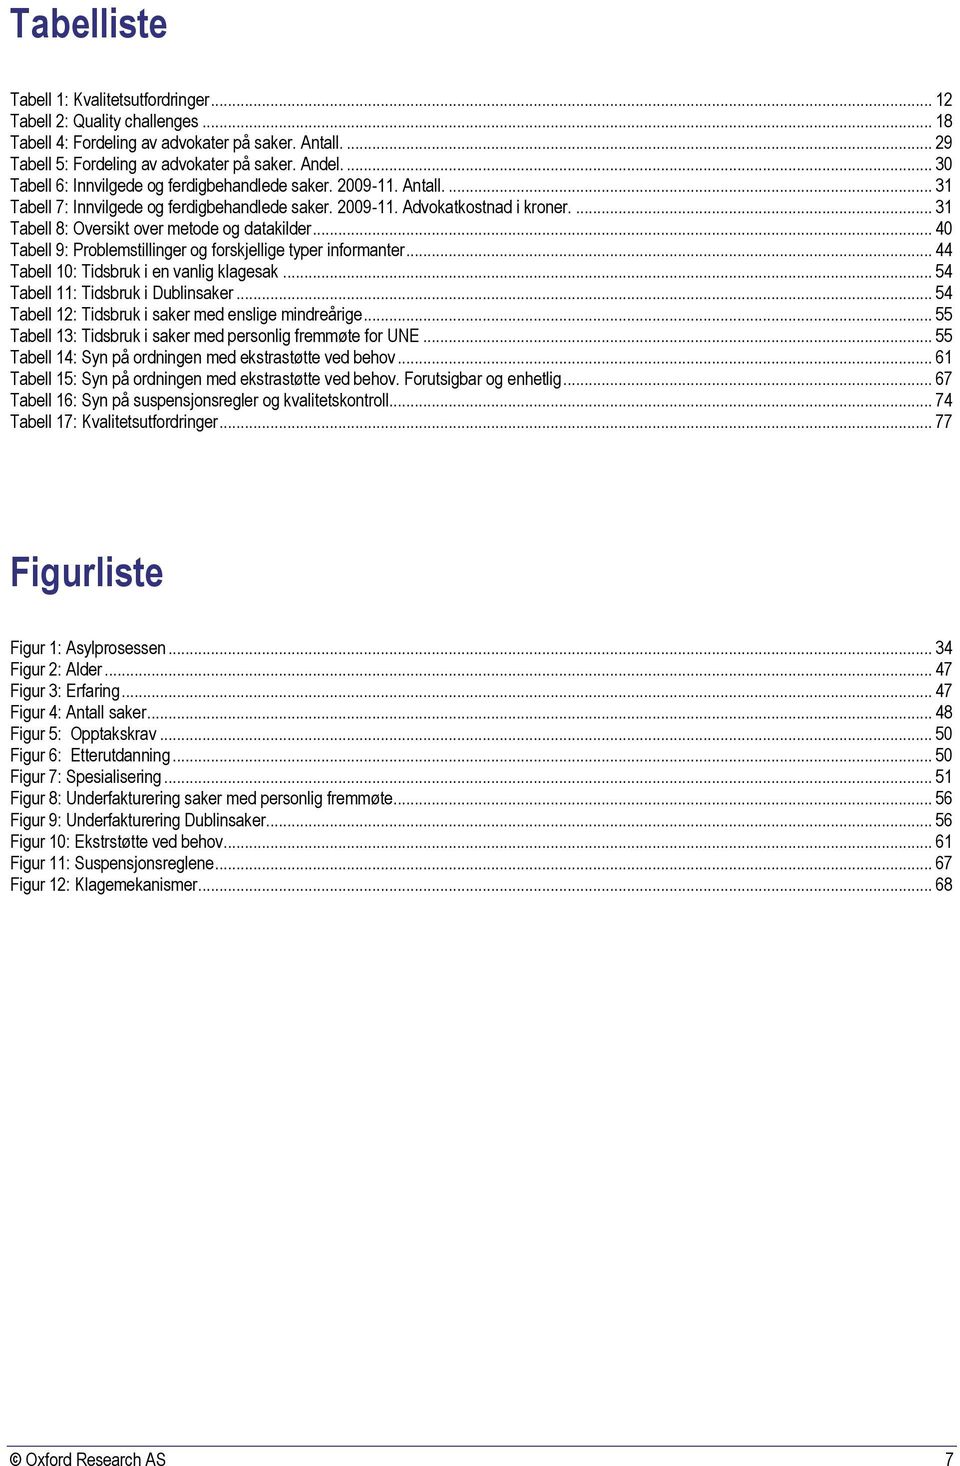 ... 31 Tabell 8: Oversikt over metode og datakilder... 40 Tabell 9: Problemstillinger og forskjellige typer informanter... 44 Tabell 10: Tidsbruk i en vanlig klagesak.